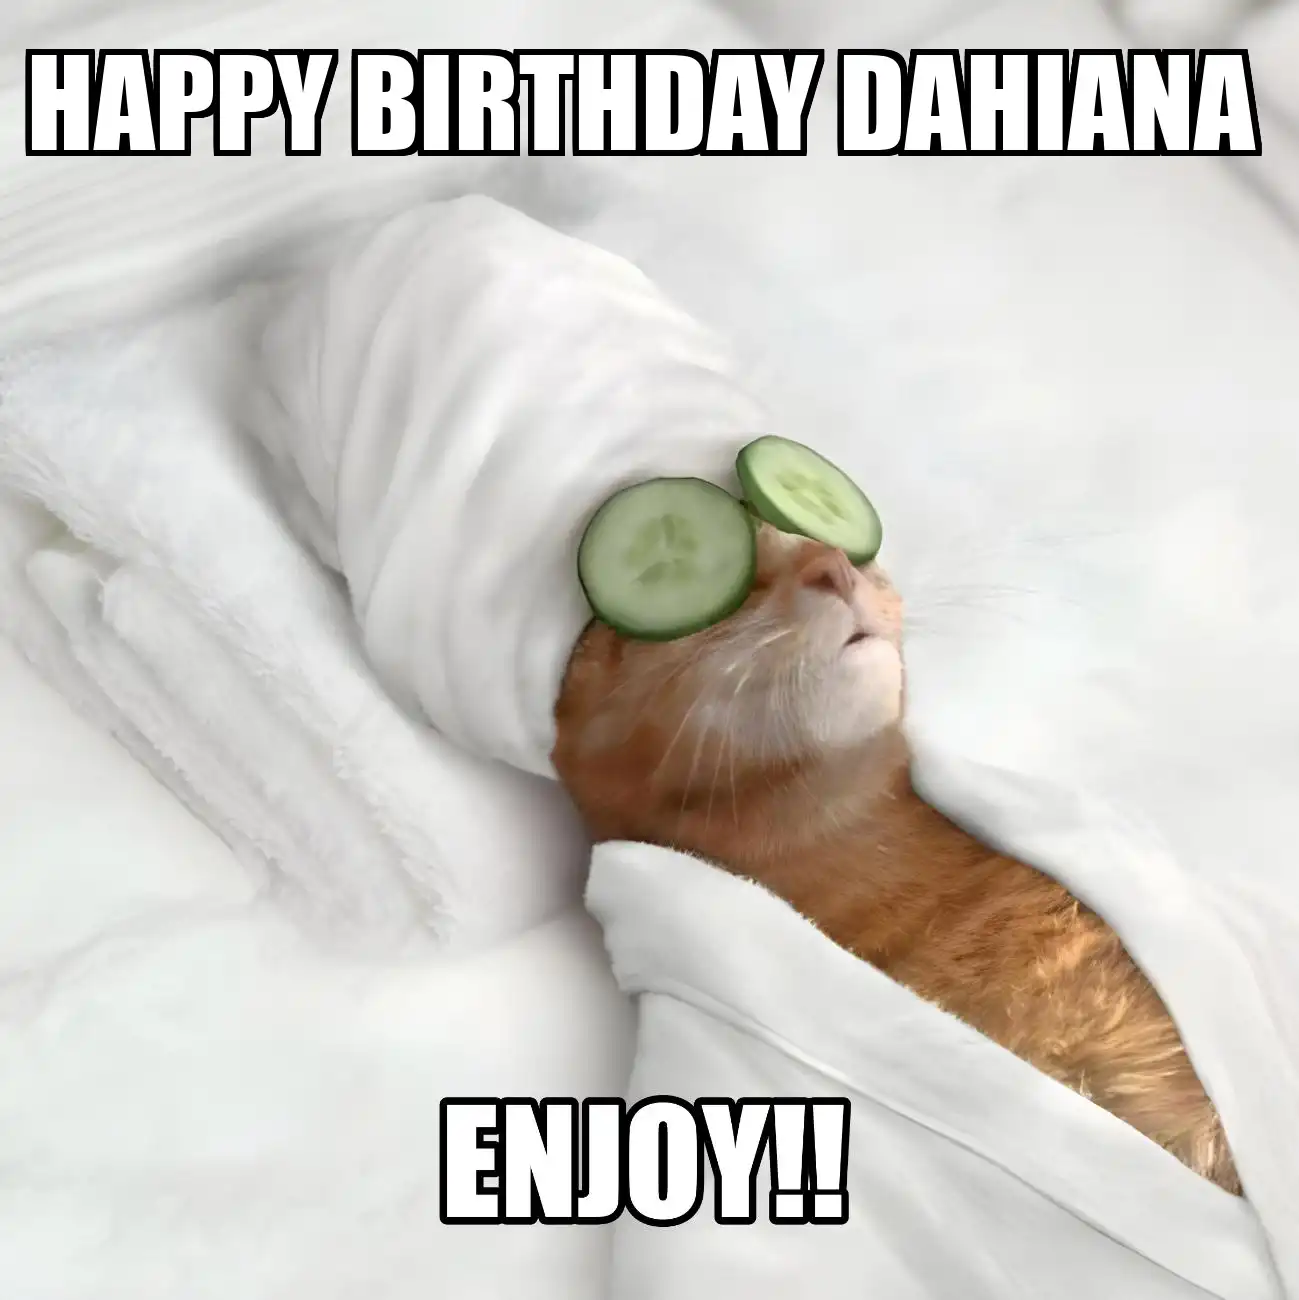 Happy Birthday Dahiana Enjoy Cat Meme